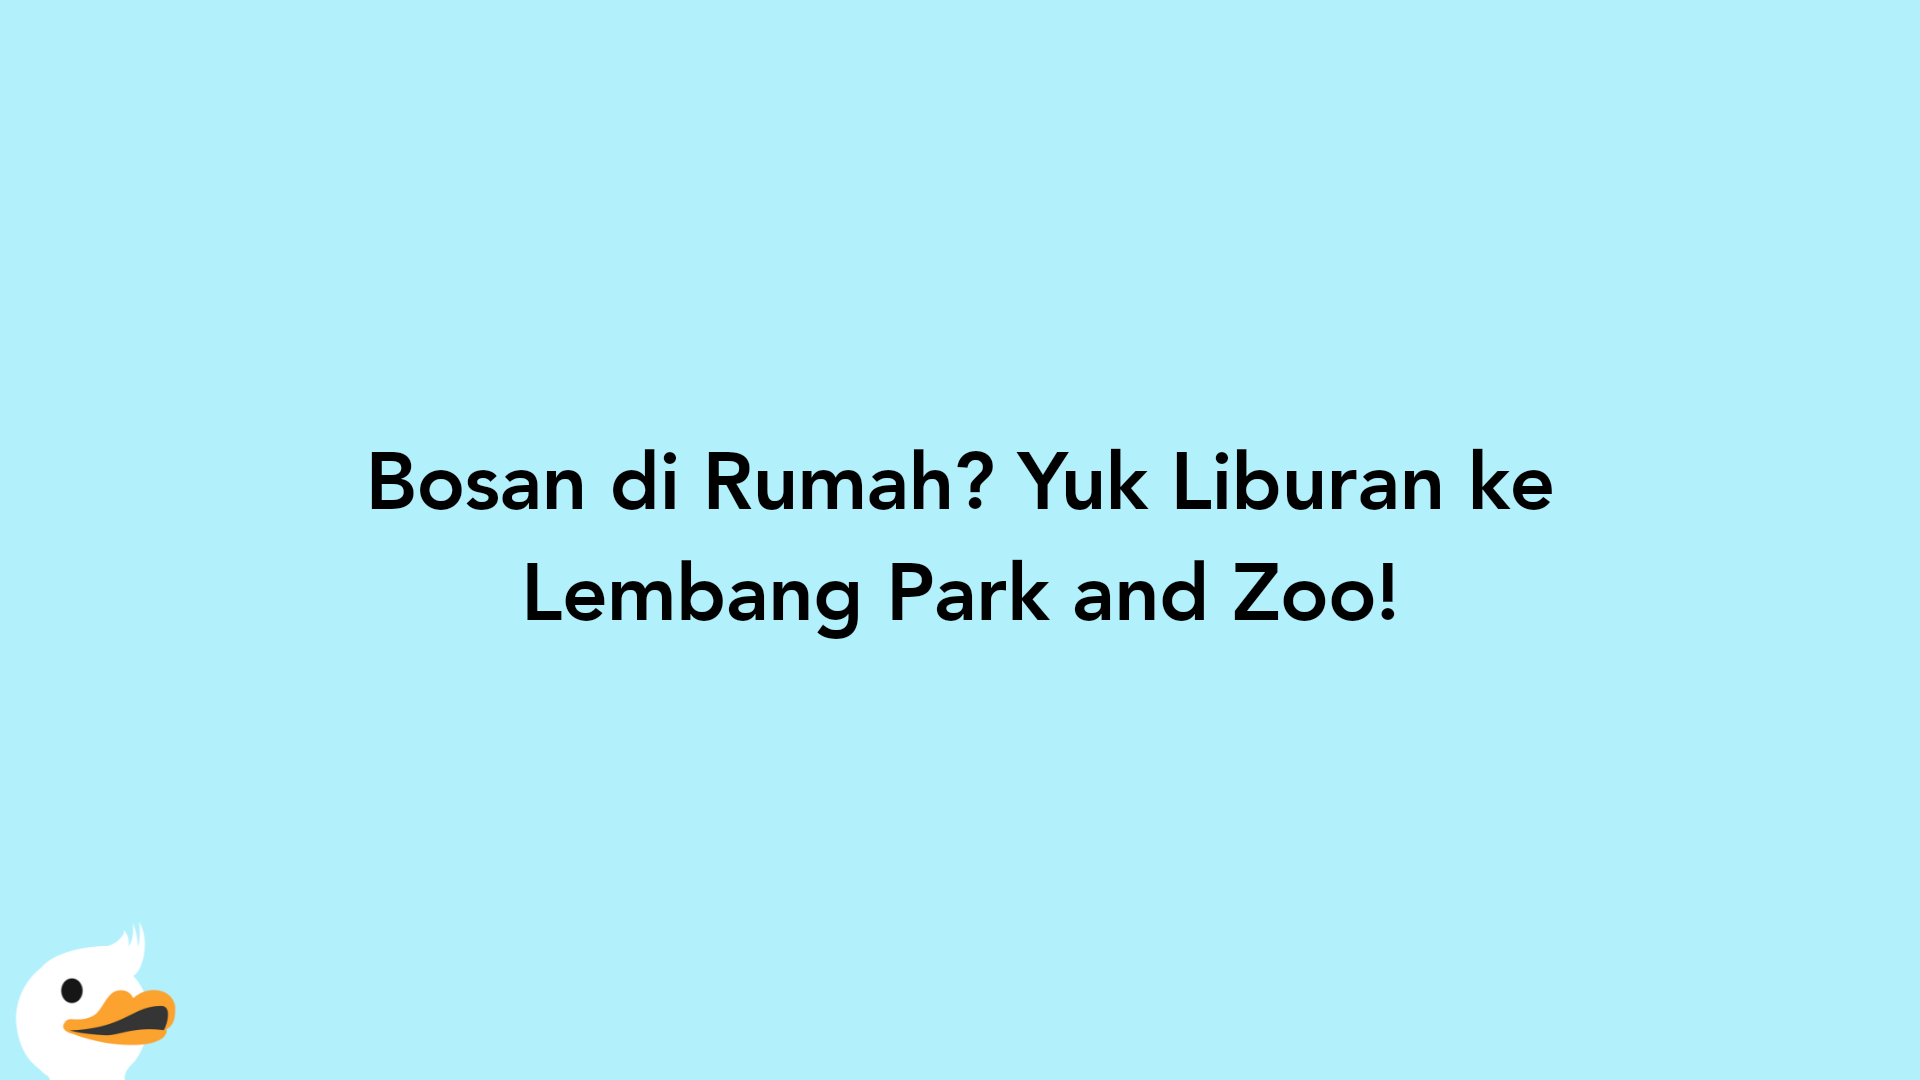 Bosan di Rumah? Yuk Liburan ke Lembang Park and Zoo!